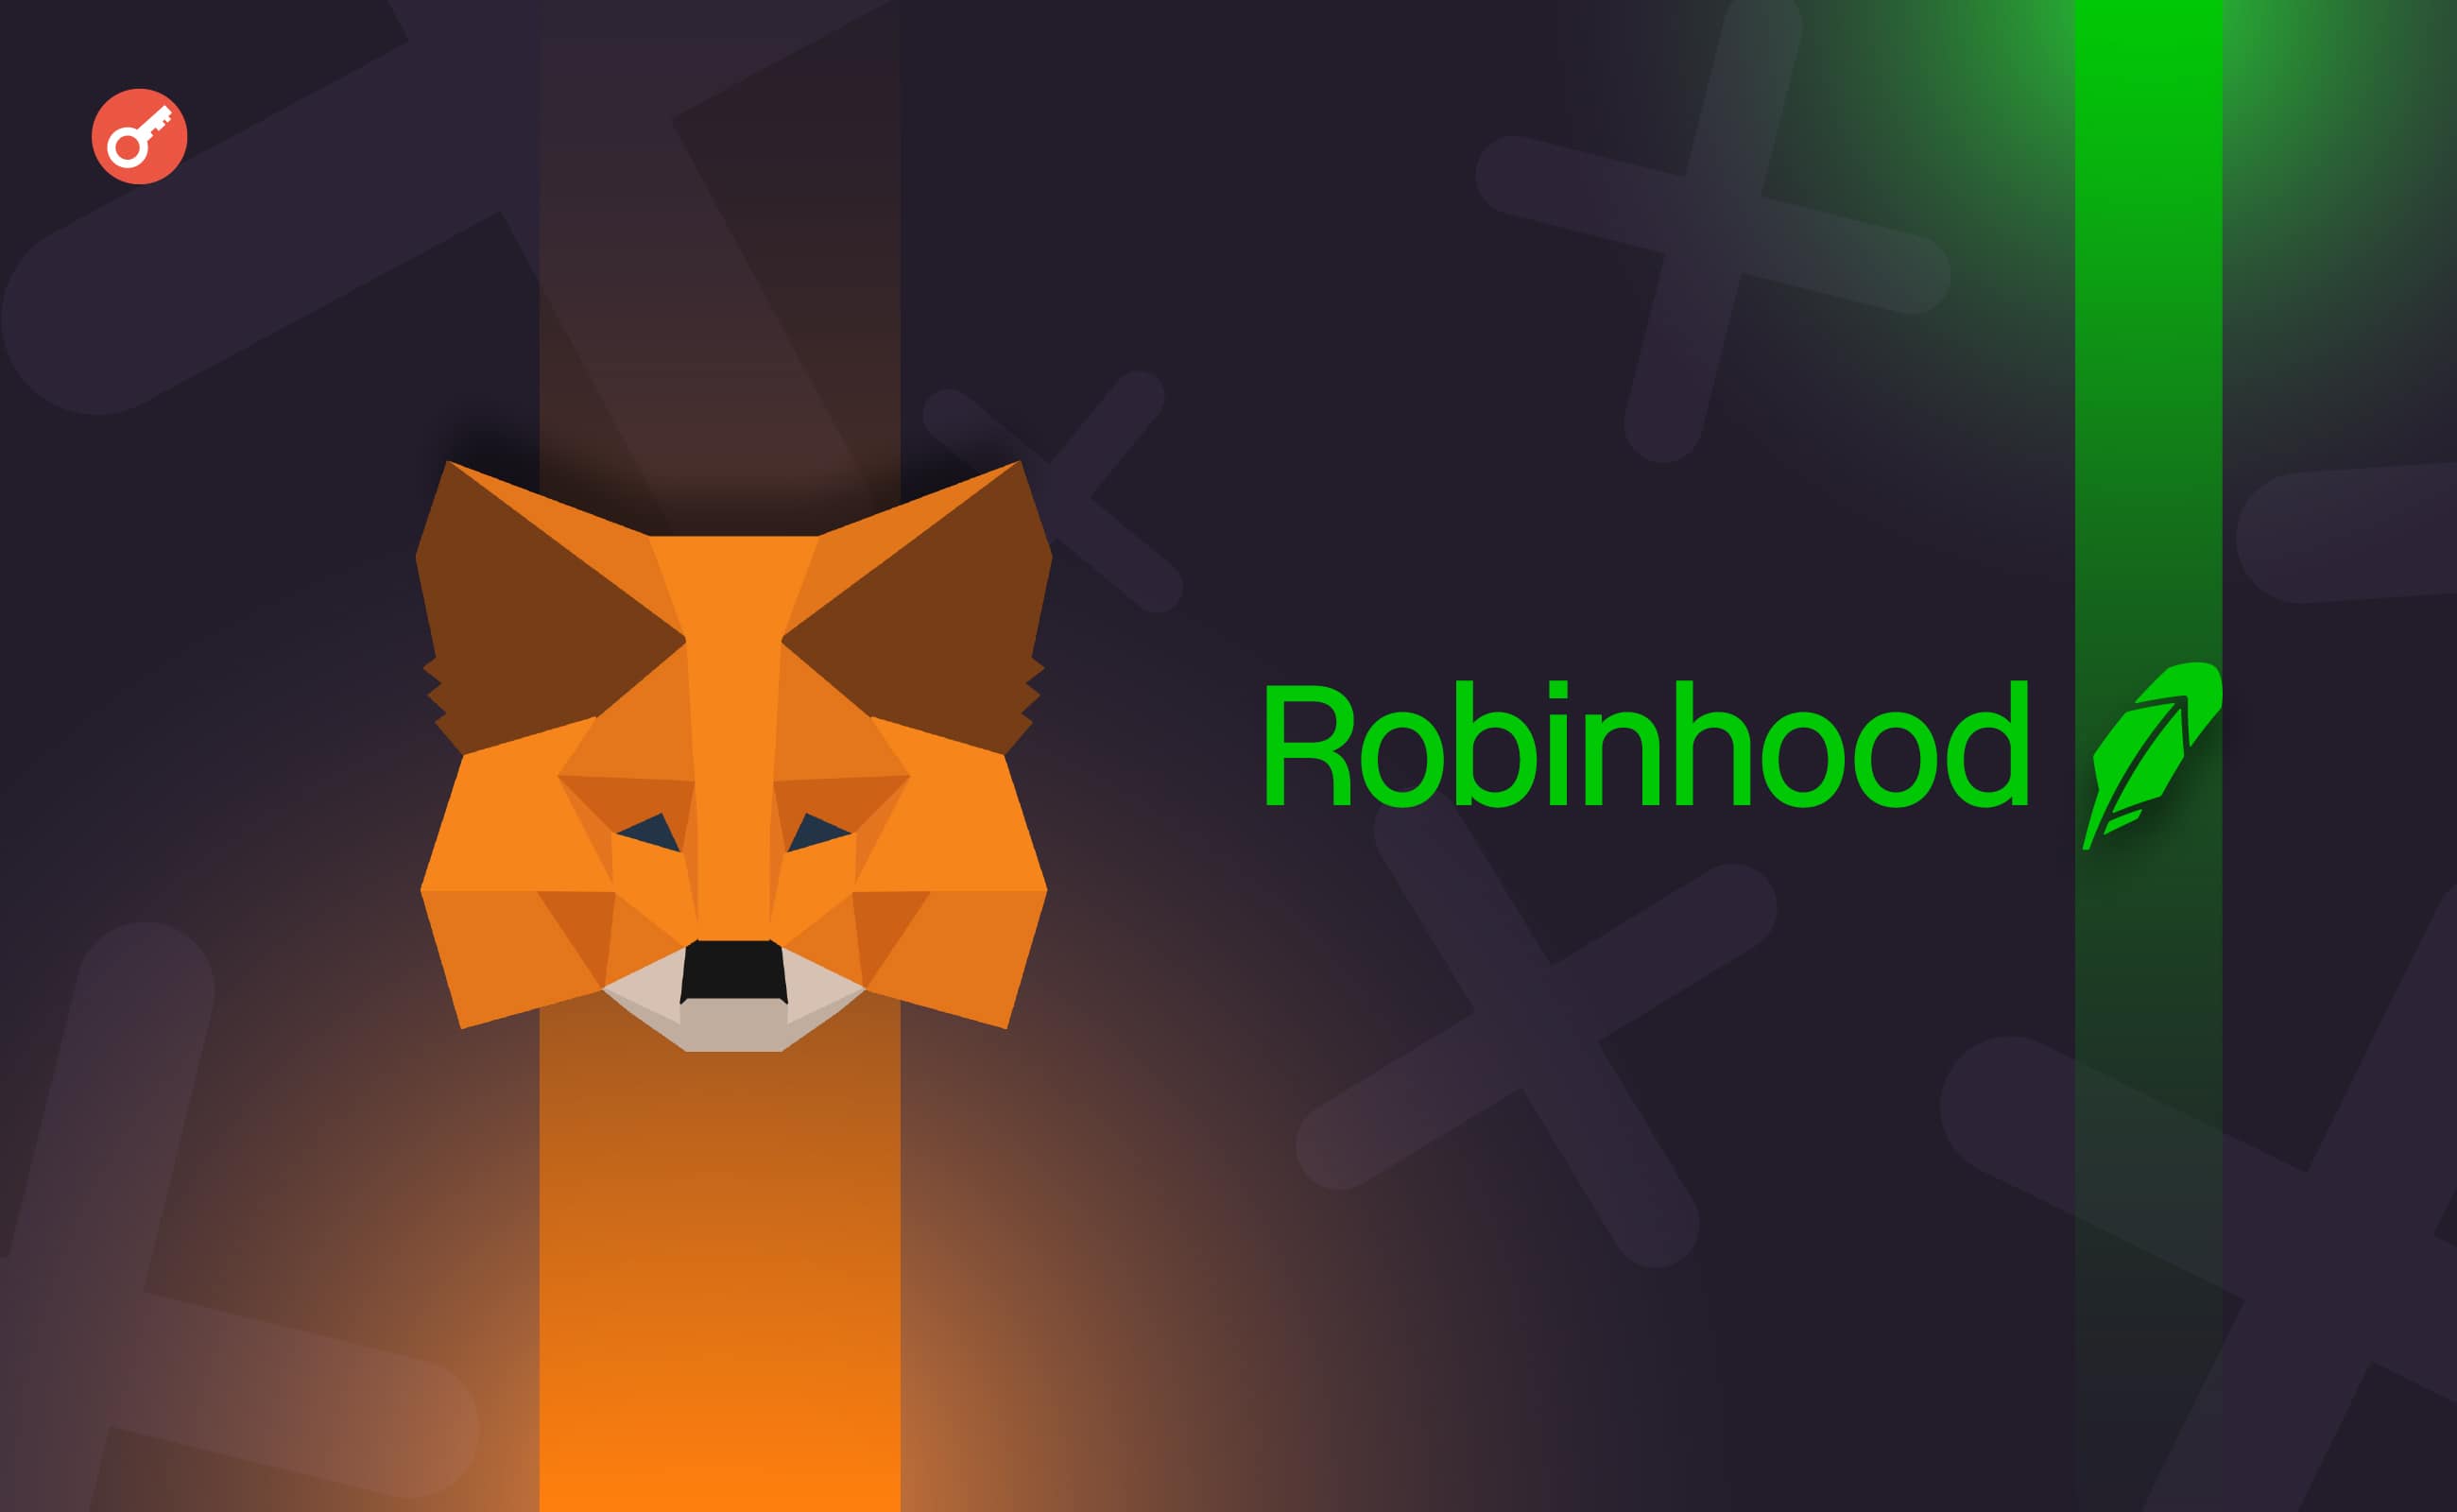 Robinhood Connect добавила поддержку MetaMask для операций с криптовалютами. Заглавный коллаж новости.